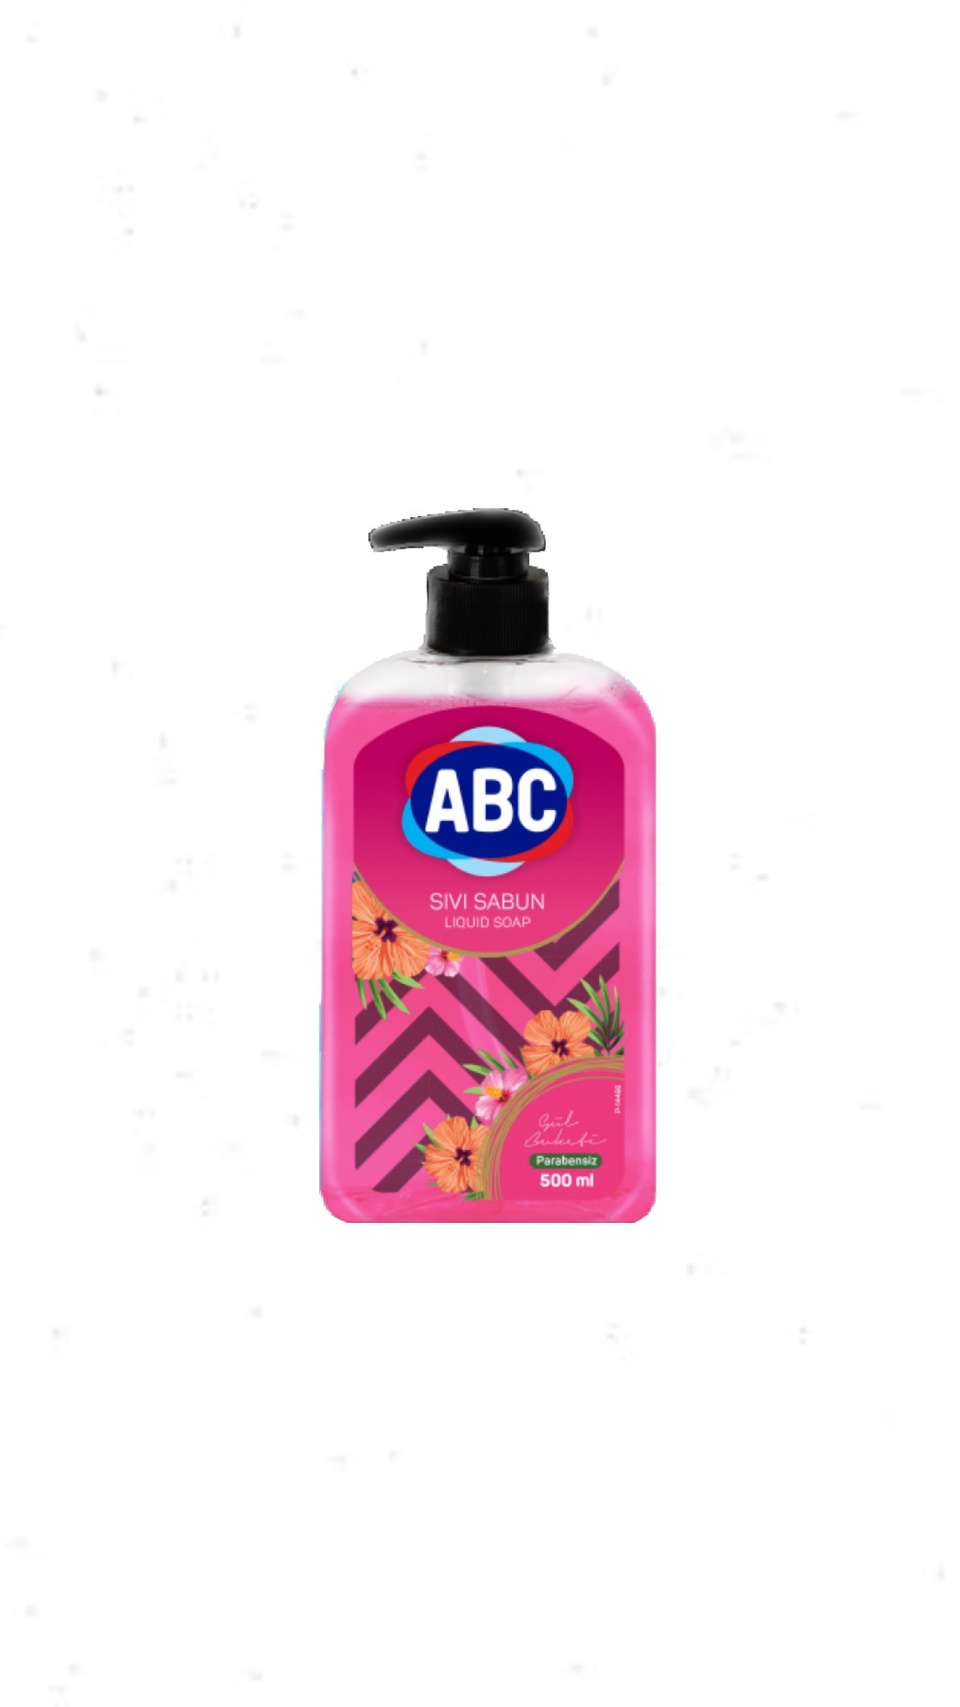 ABC Sivi Sabun жидкое мыло для рук - 150 ₽, заказать онлайн.